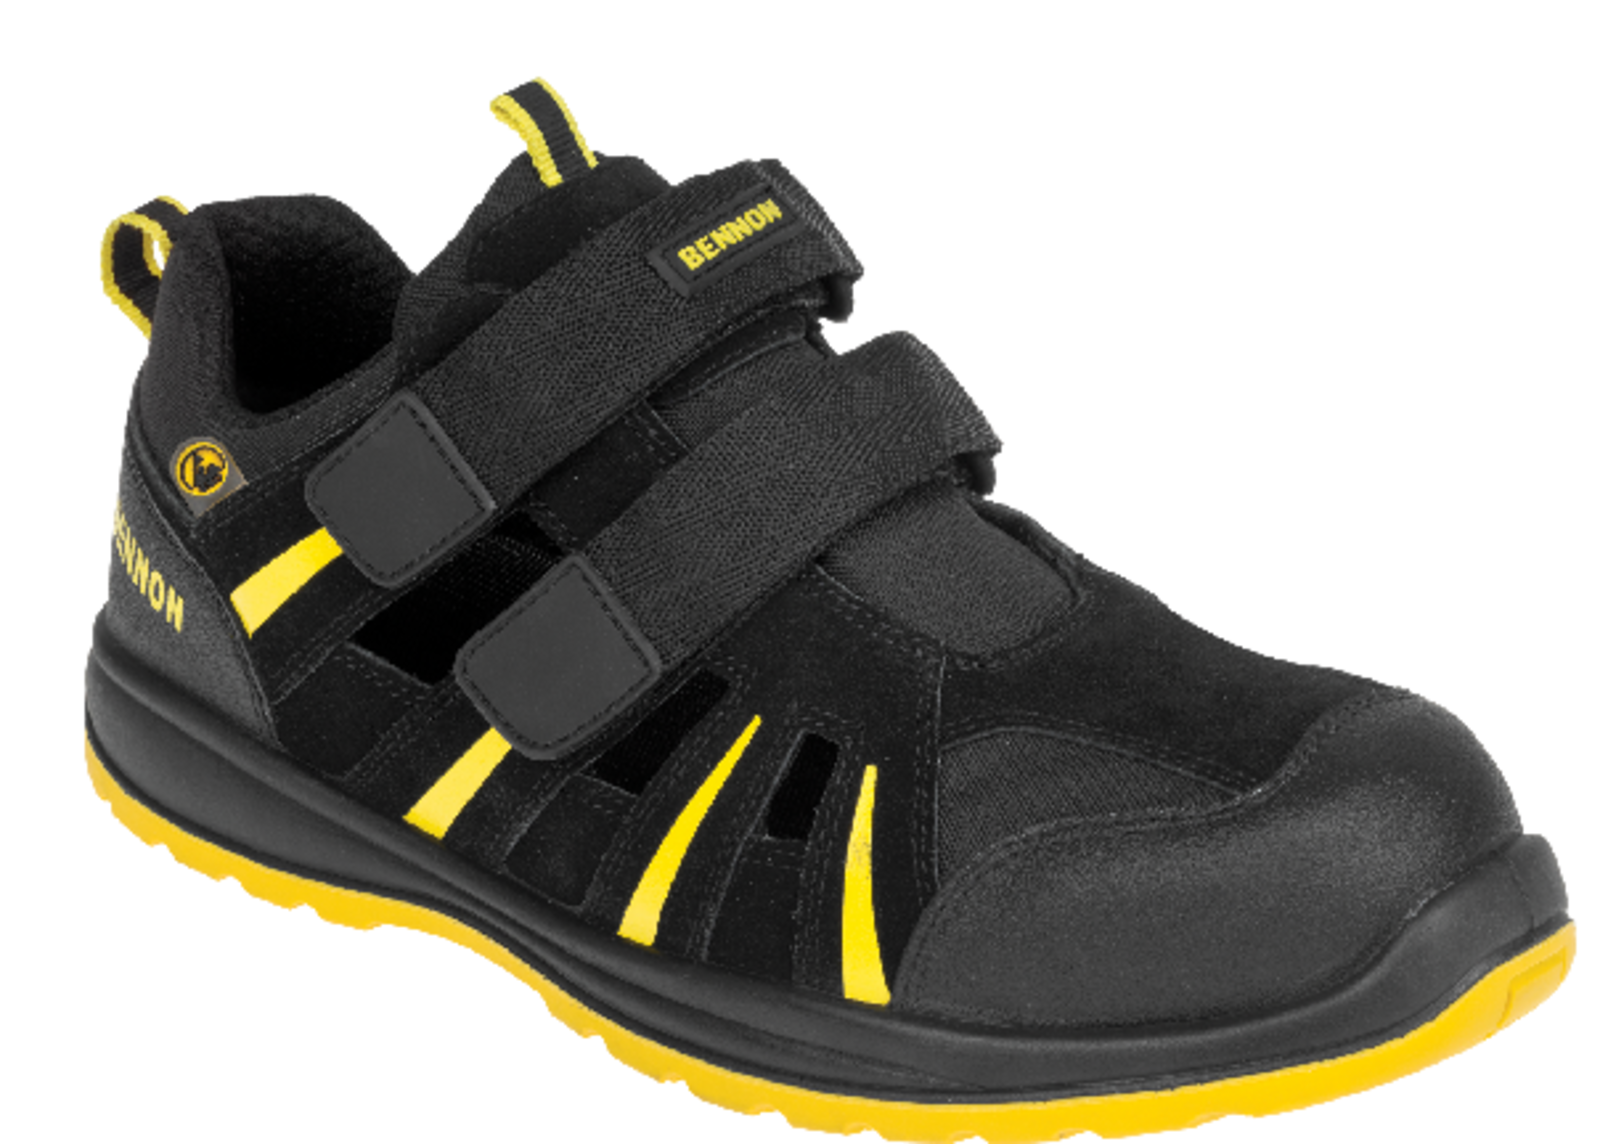 Bezpečnostné sandále Bennon Ribbon S1 ESD - veľkosť: 47, farba: čierna/žltá